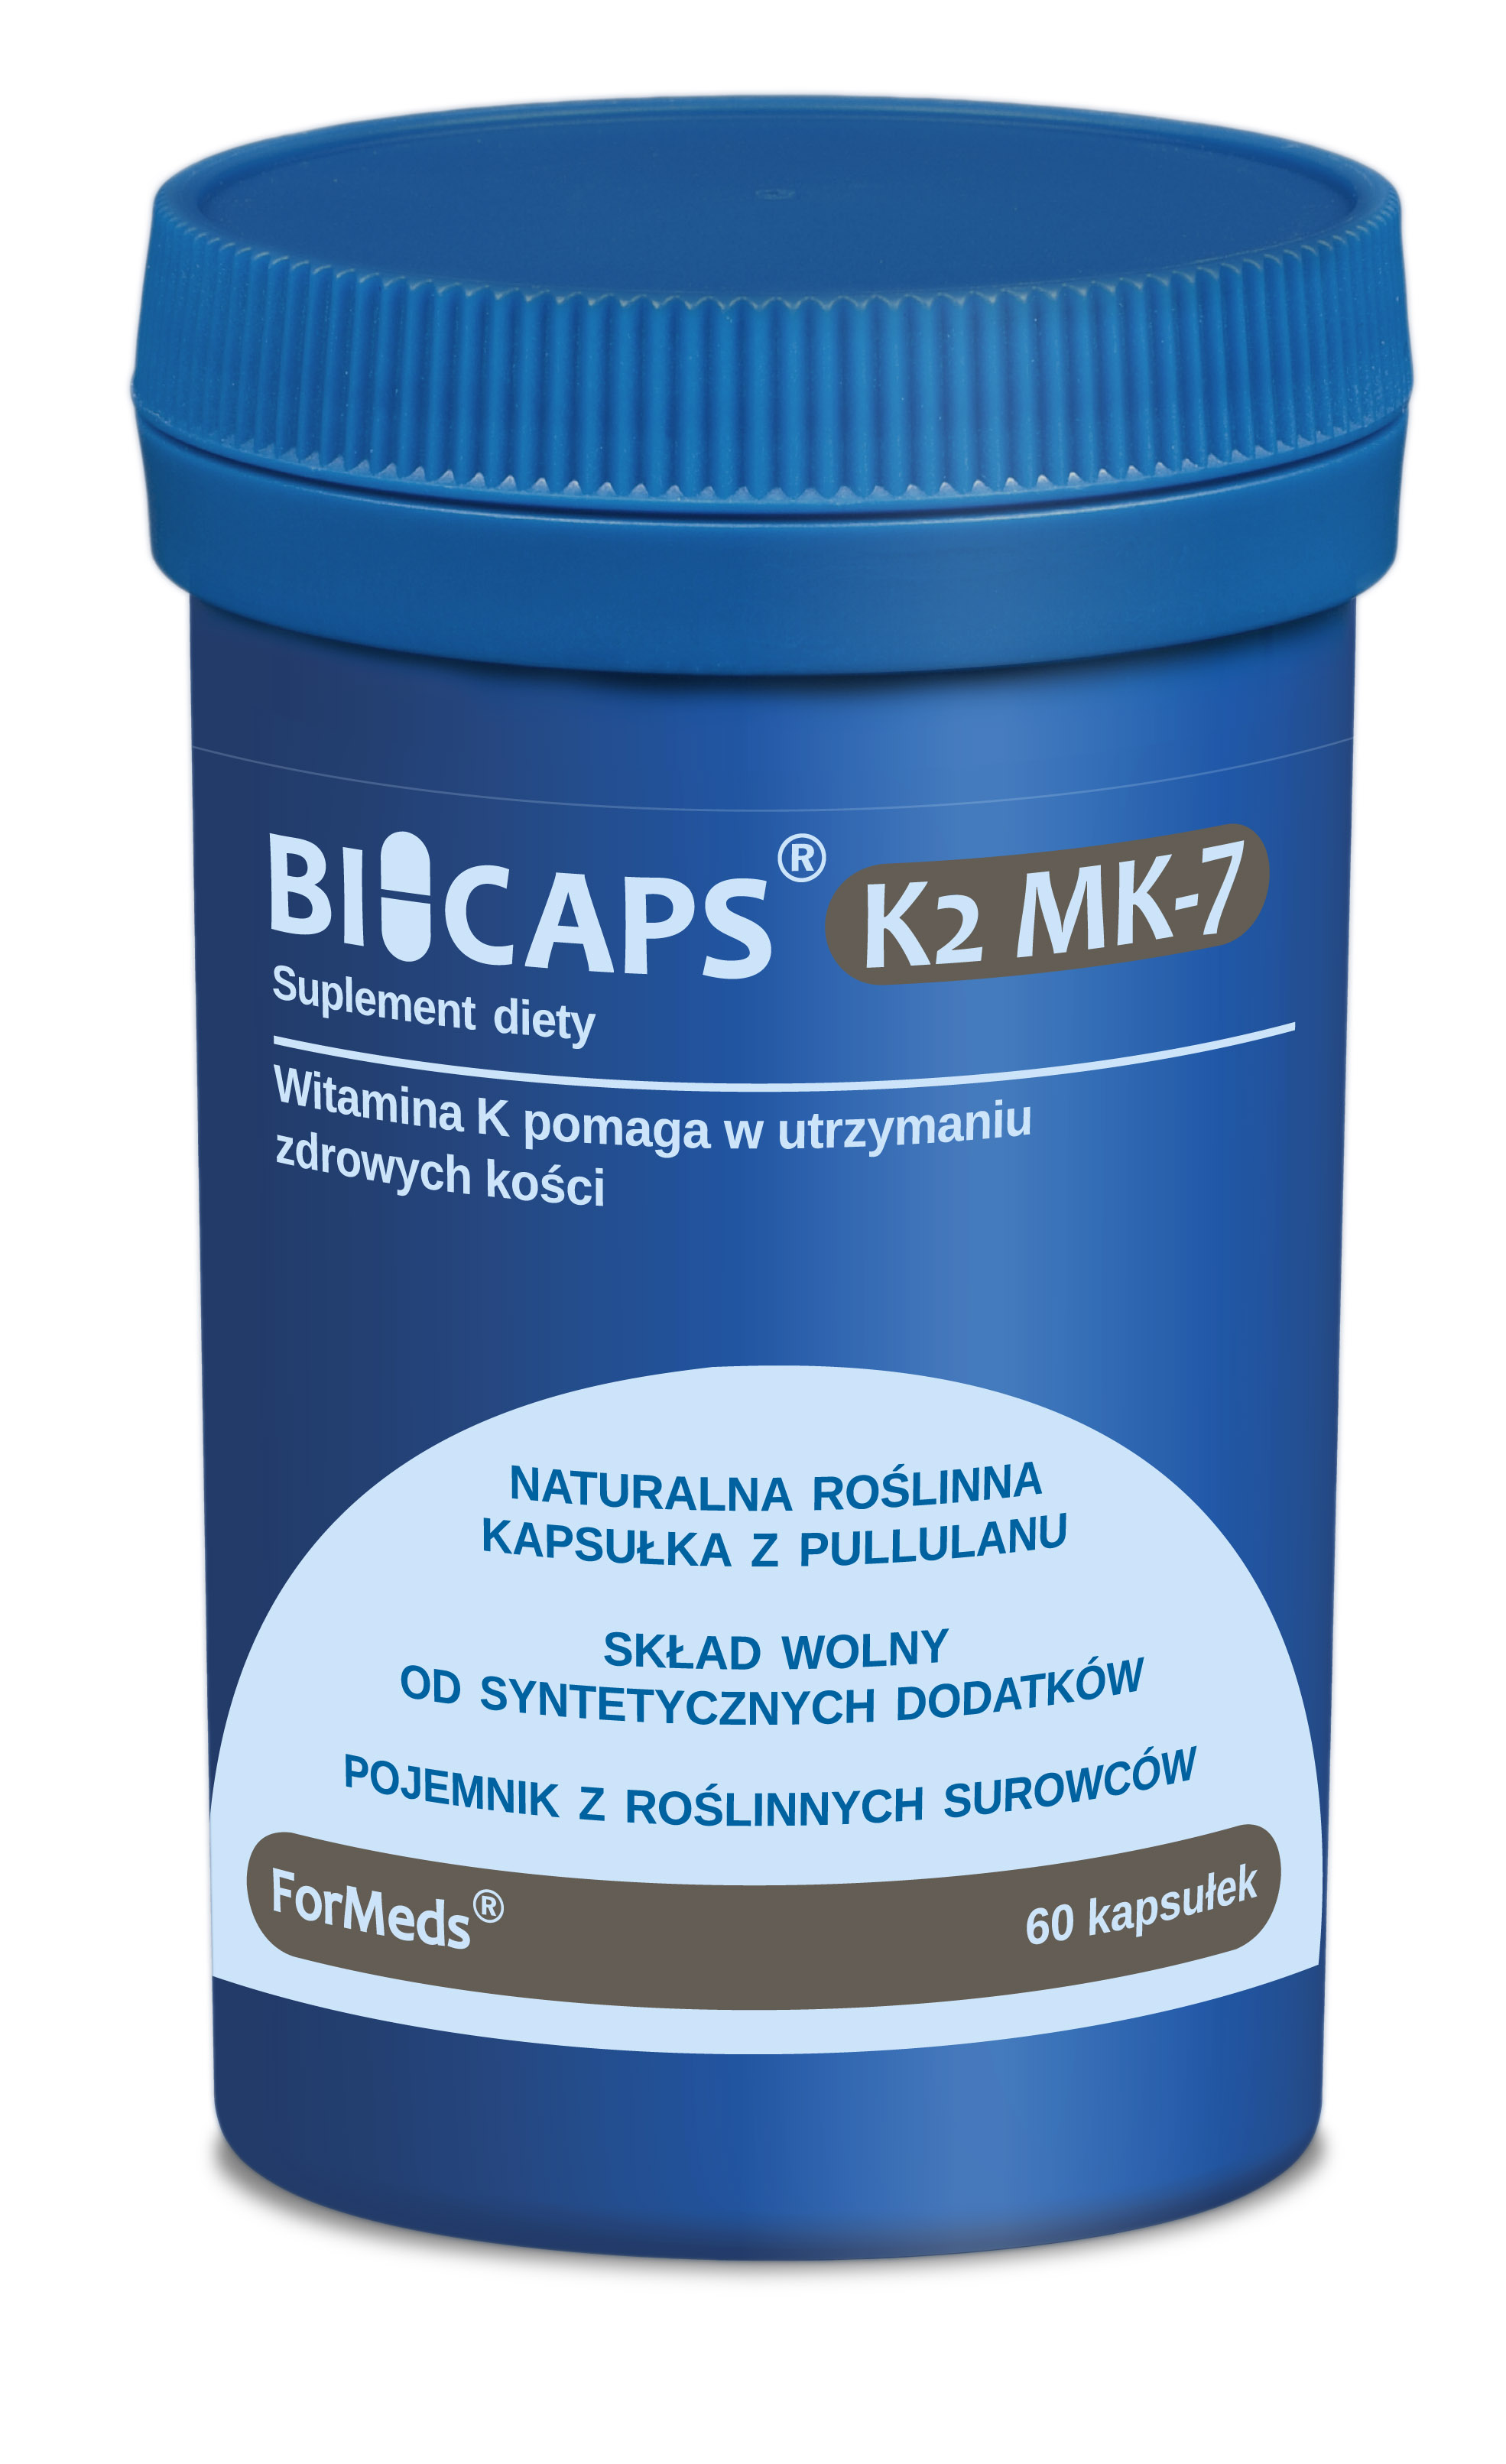 BICAPS® K2 MK-7